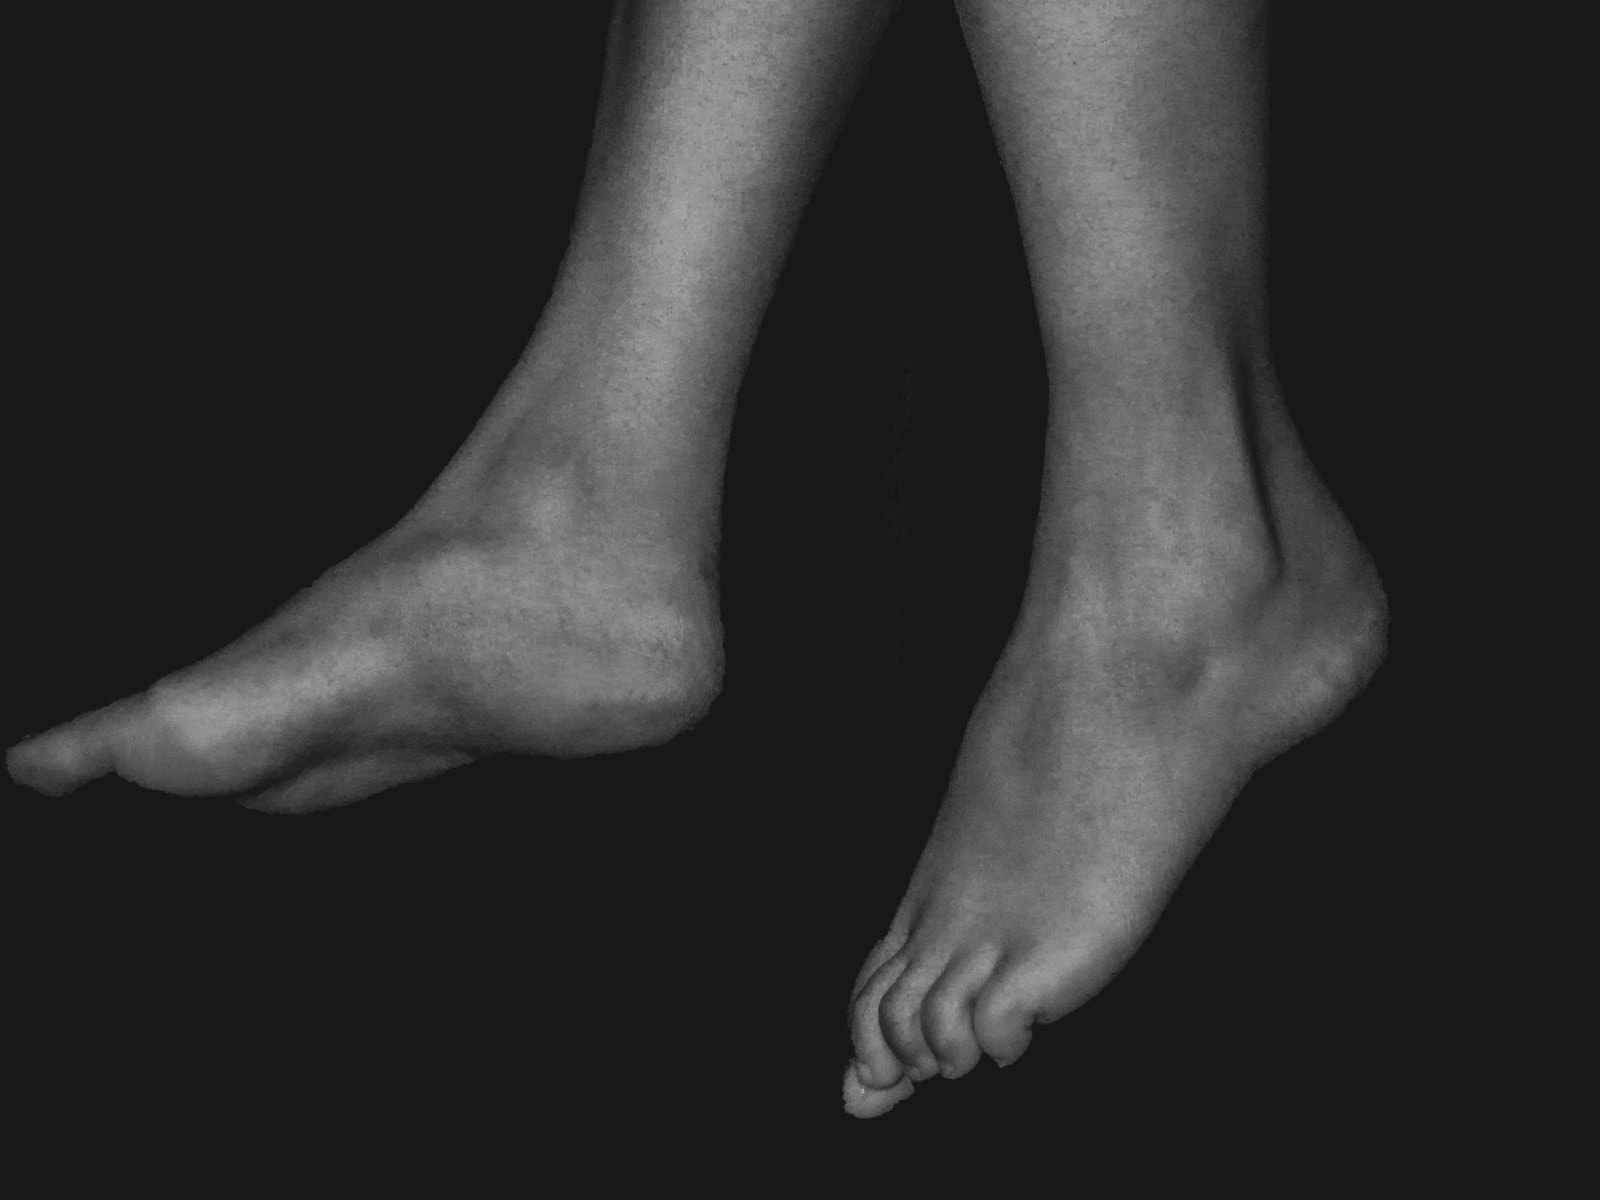 Füße in schwarz-weiß